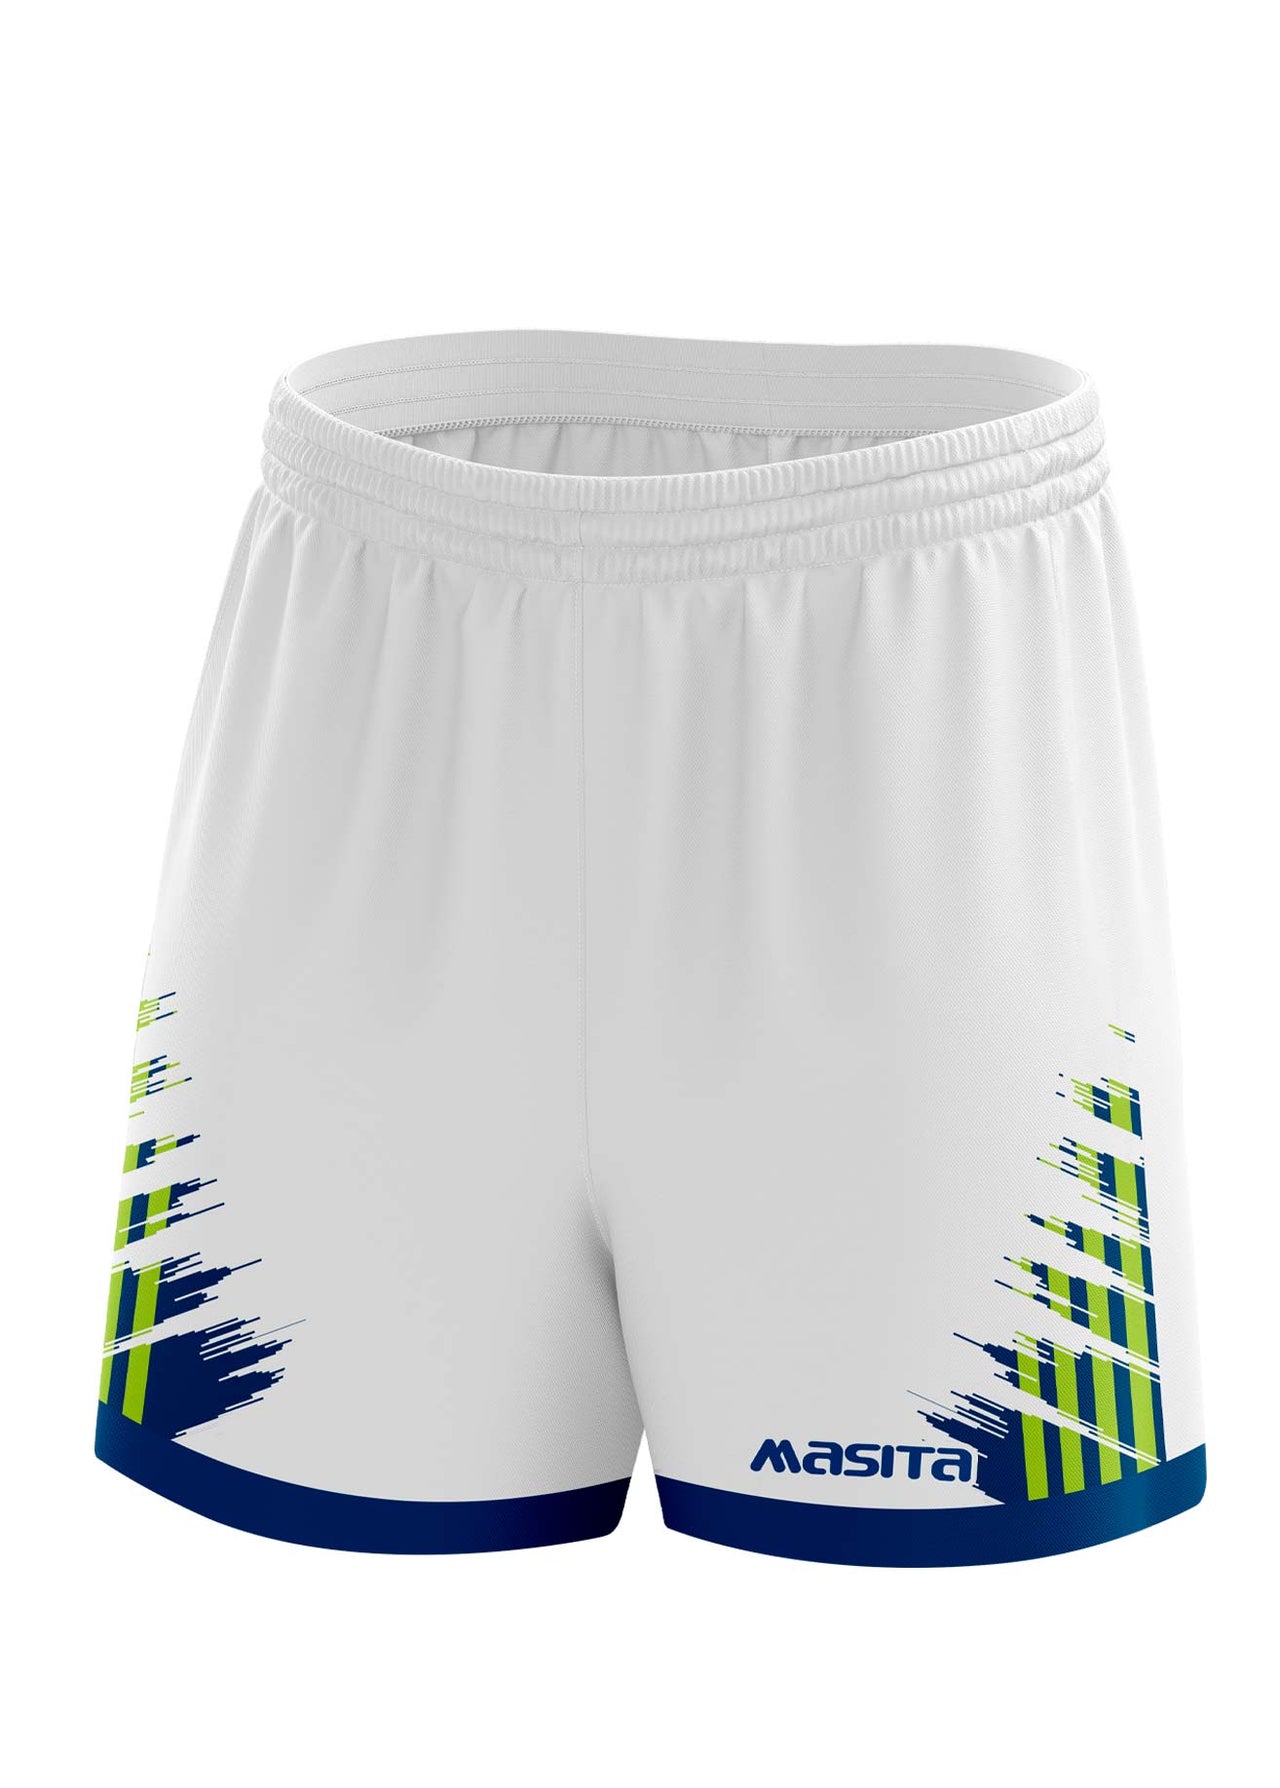 Barkley Gaelic Shorts White/Navy/Neo Green Adult